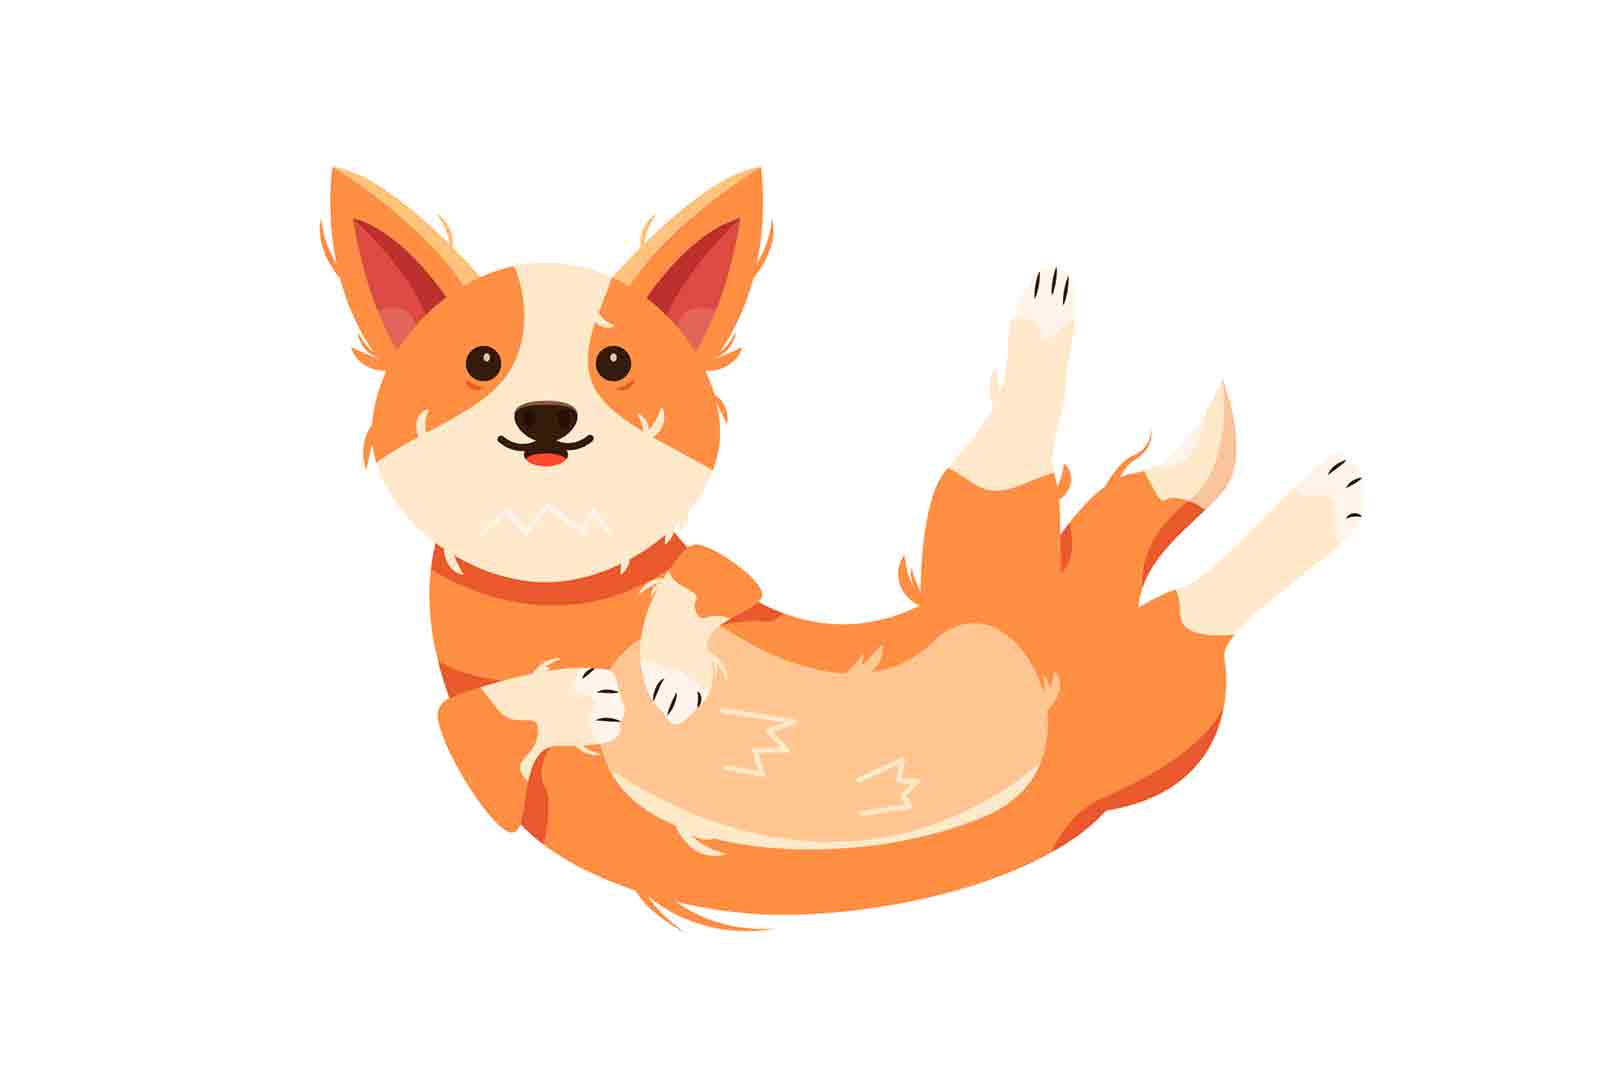 Corgi dog icon isolated on white background, flat vector illustration.